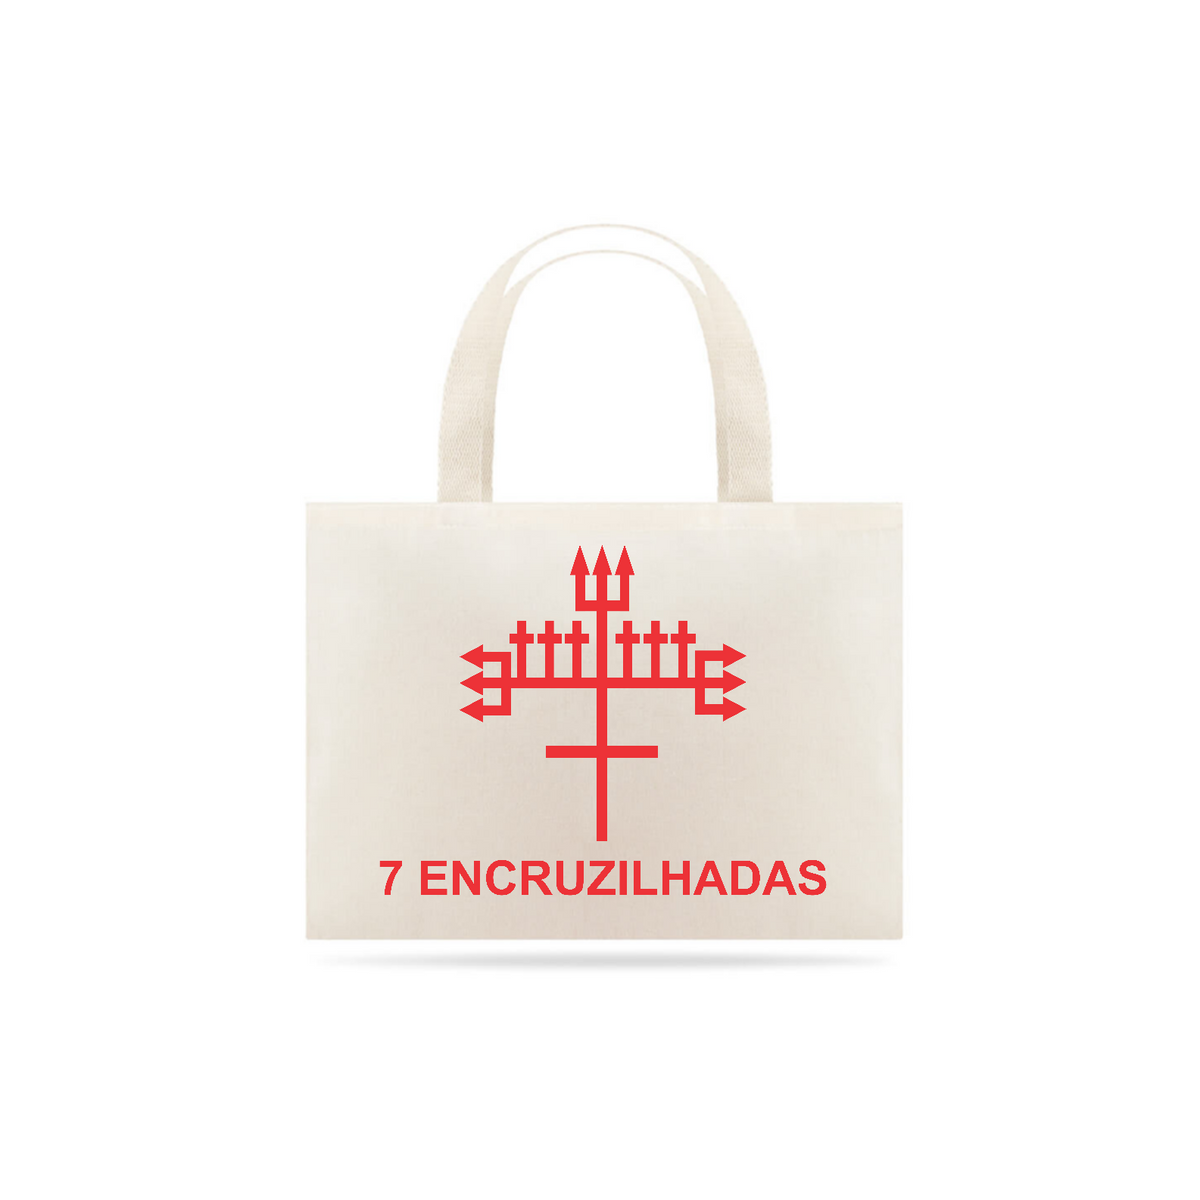 Nome do produto: Eco Bag 7 Encruzilhadas